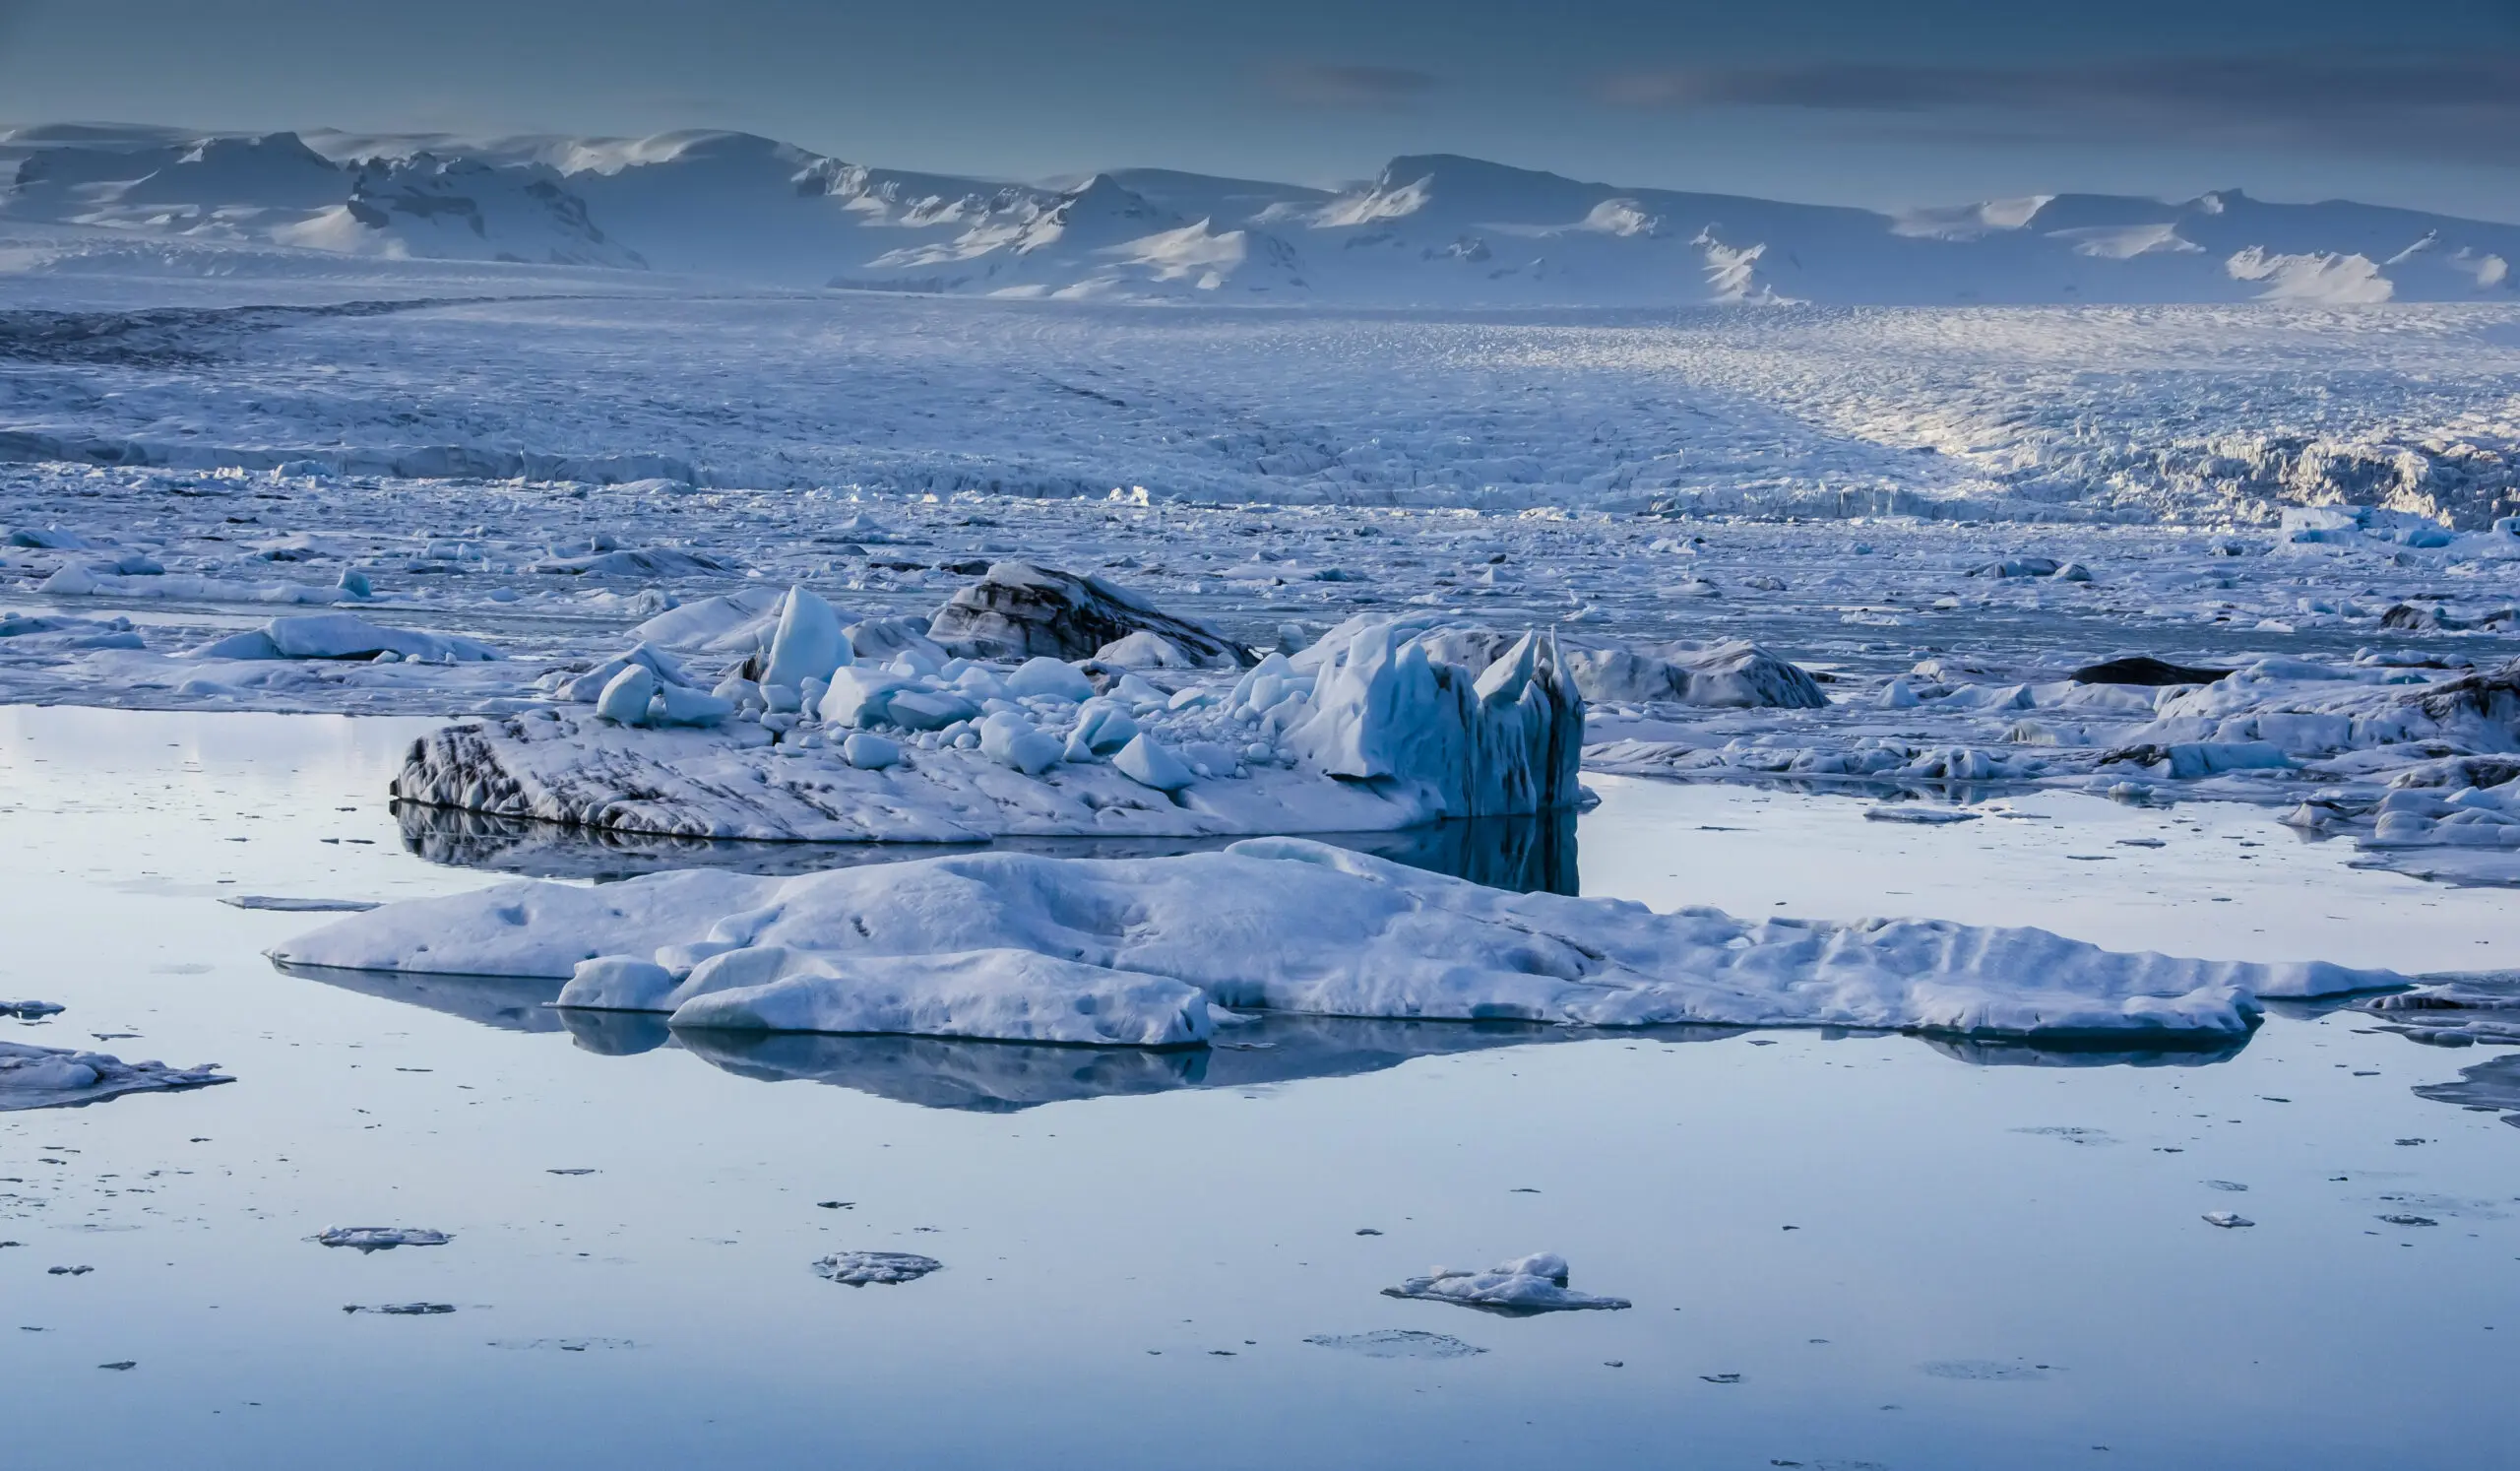 Wandbild (2789) Eisblau2 präsentiert: Wasser,Details und Strukturen,Natur,Landschaften,Schnee und Eis,Winter,Afrika,Detailaufnahmen,Gewässer